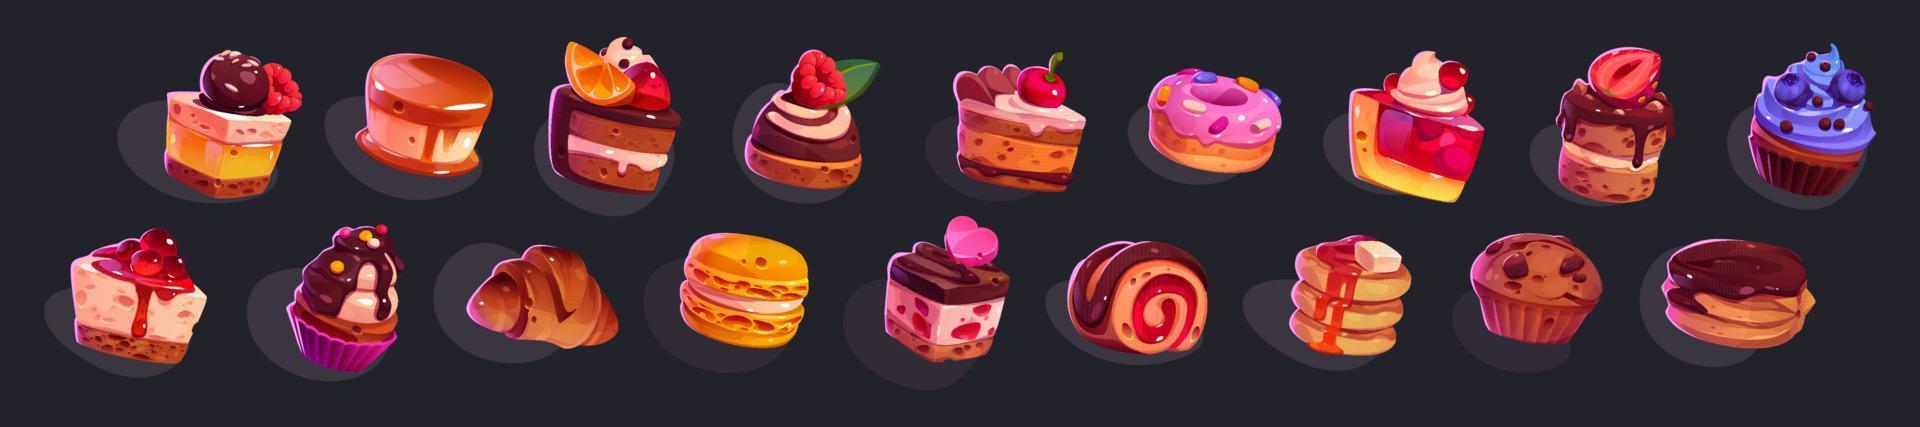 iconos del juego pasteles, dulces y postres y pasteles vector